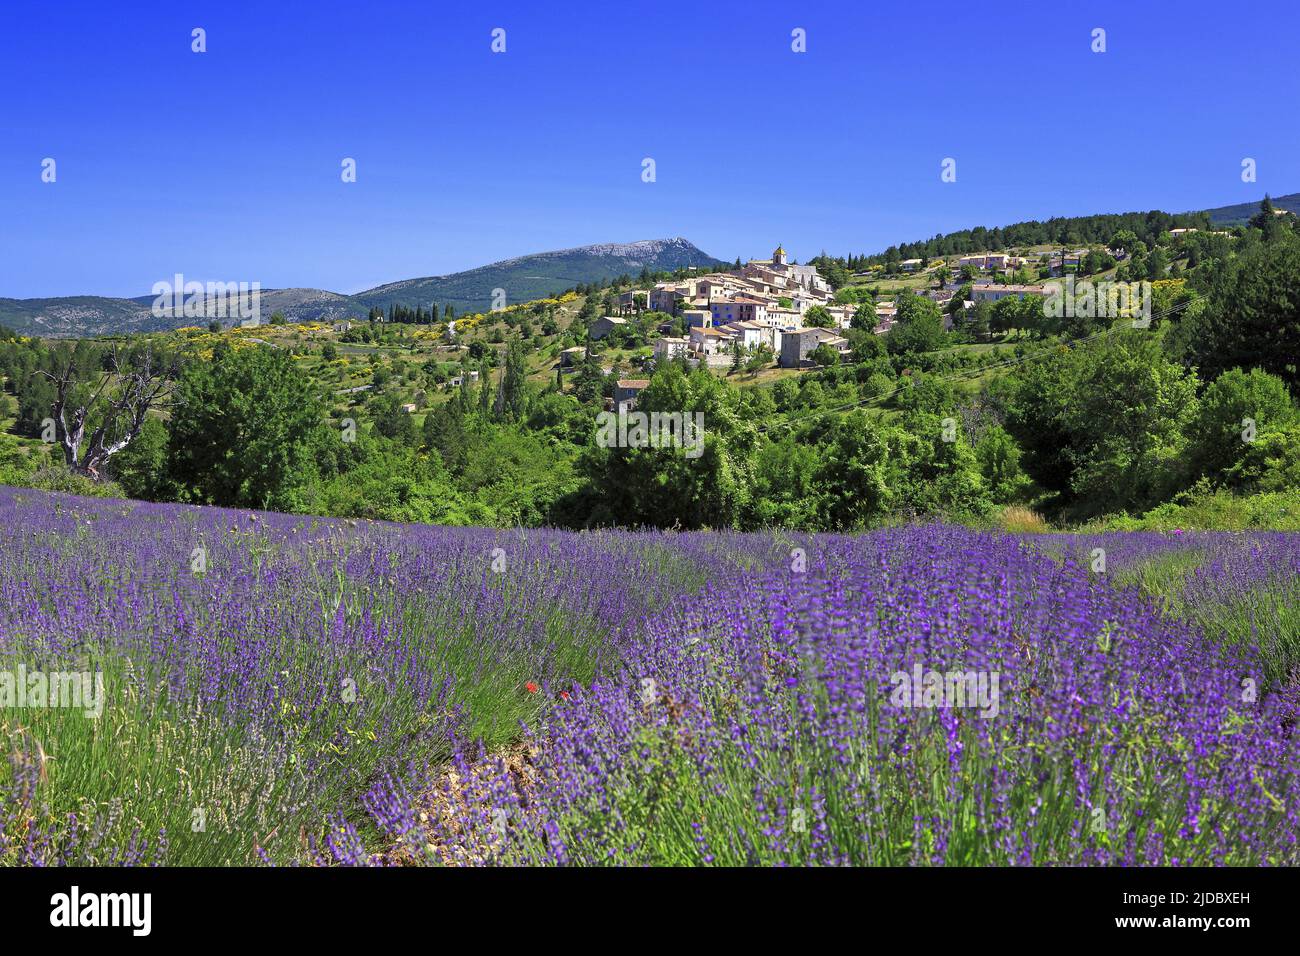 France, Vaucluse Aurel, village of Mont Ventoux, lavender field Stock Photo